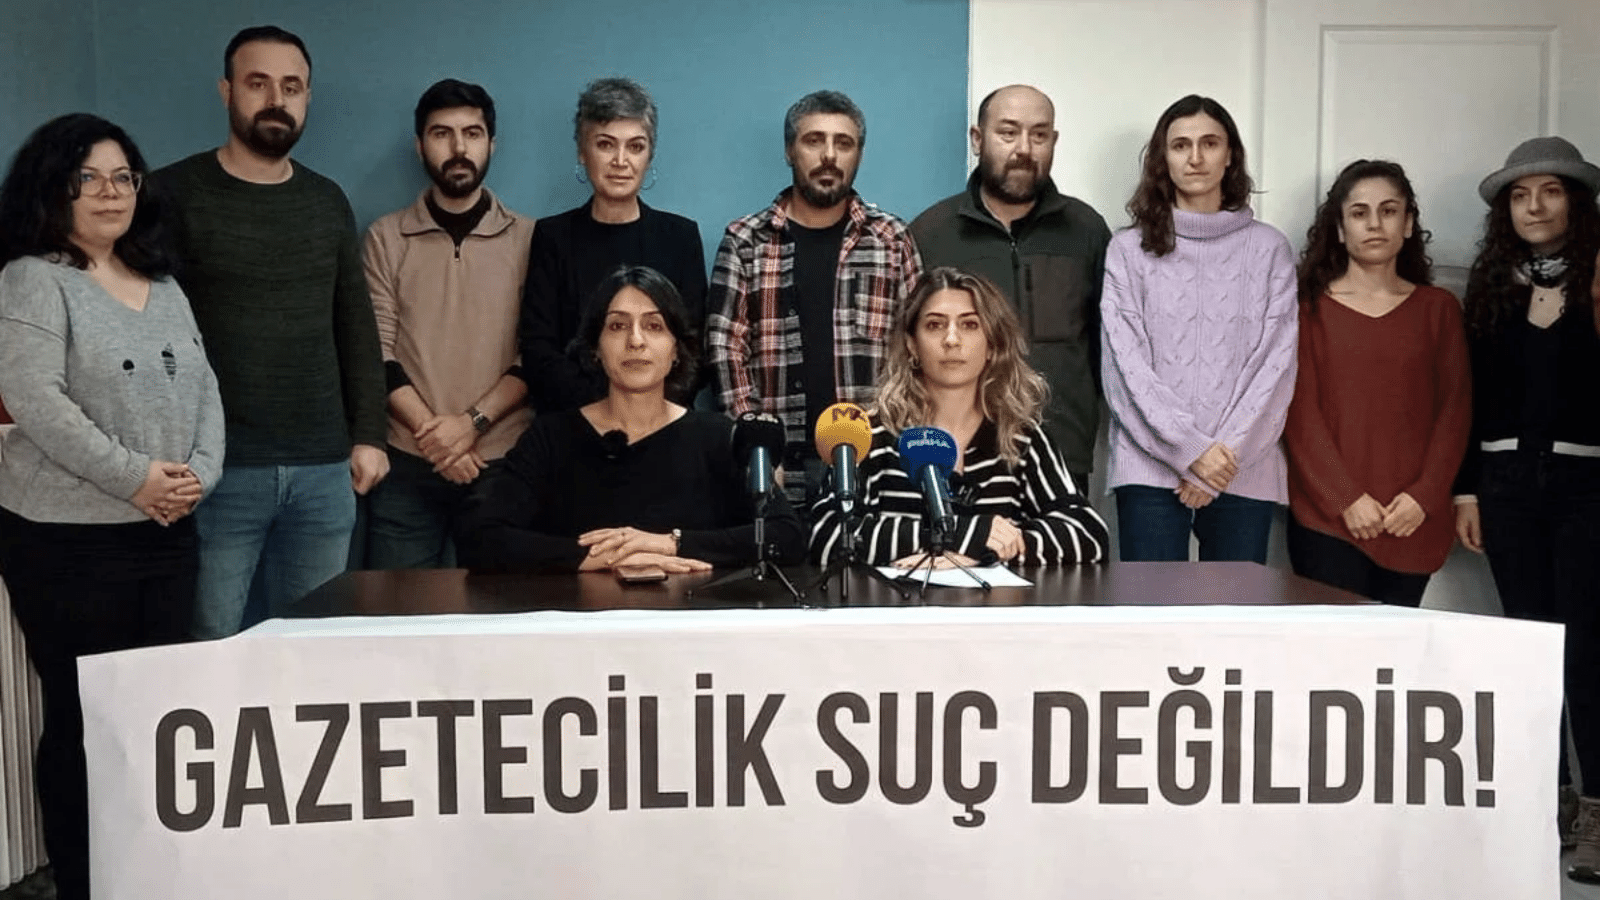 DİSK Basın-İş: “İzmir’de gazeteciler üç gündür gözaltında”